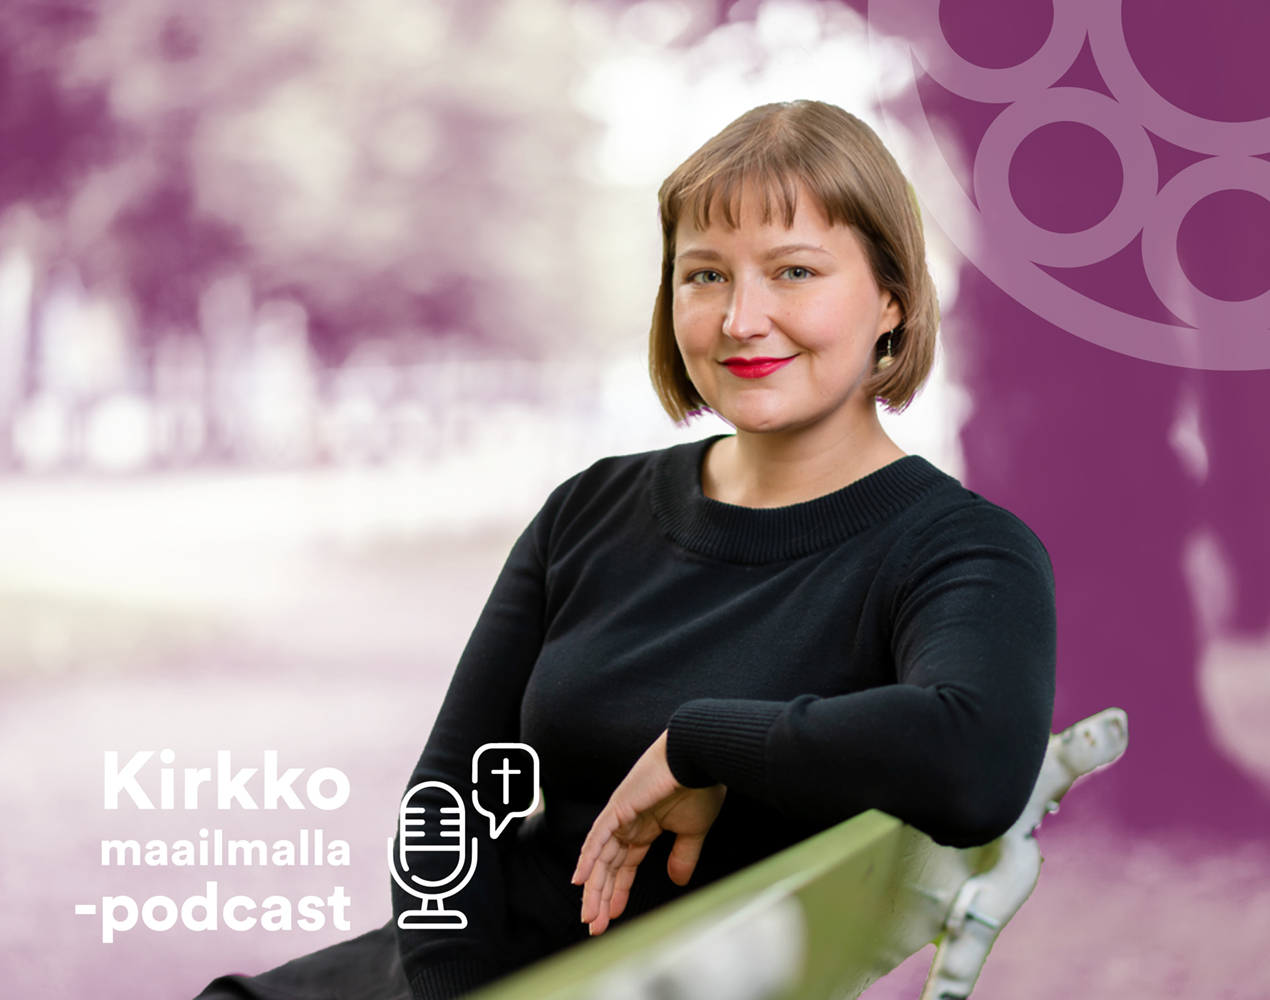 Kirkko maailmalla -podcastissa haastateltavana Piia Lempiäinen.